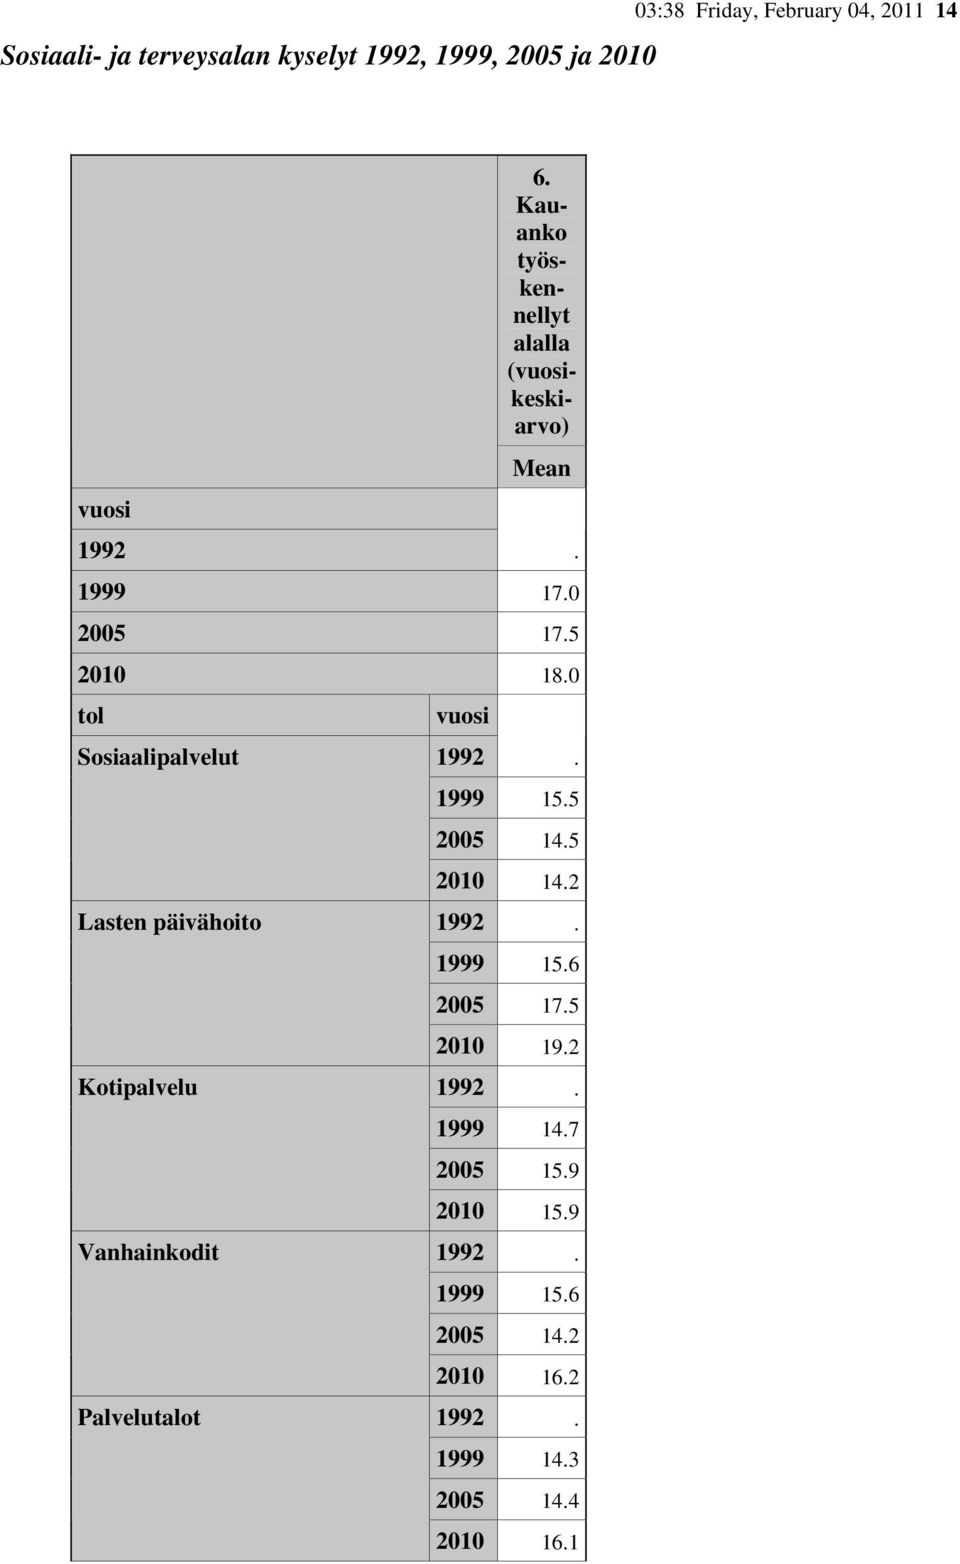 0 tol Sosiaalipalvelut Lasten päivähoito Kotipalvelu Vanhainkodit Palvelutalot 1992. 1999 15.